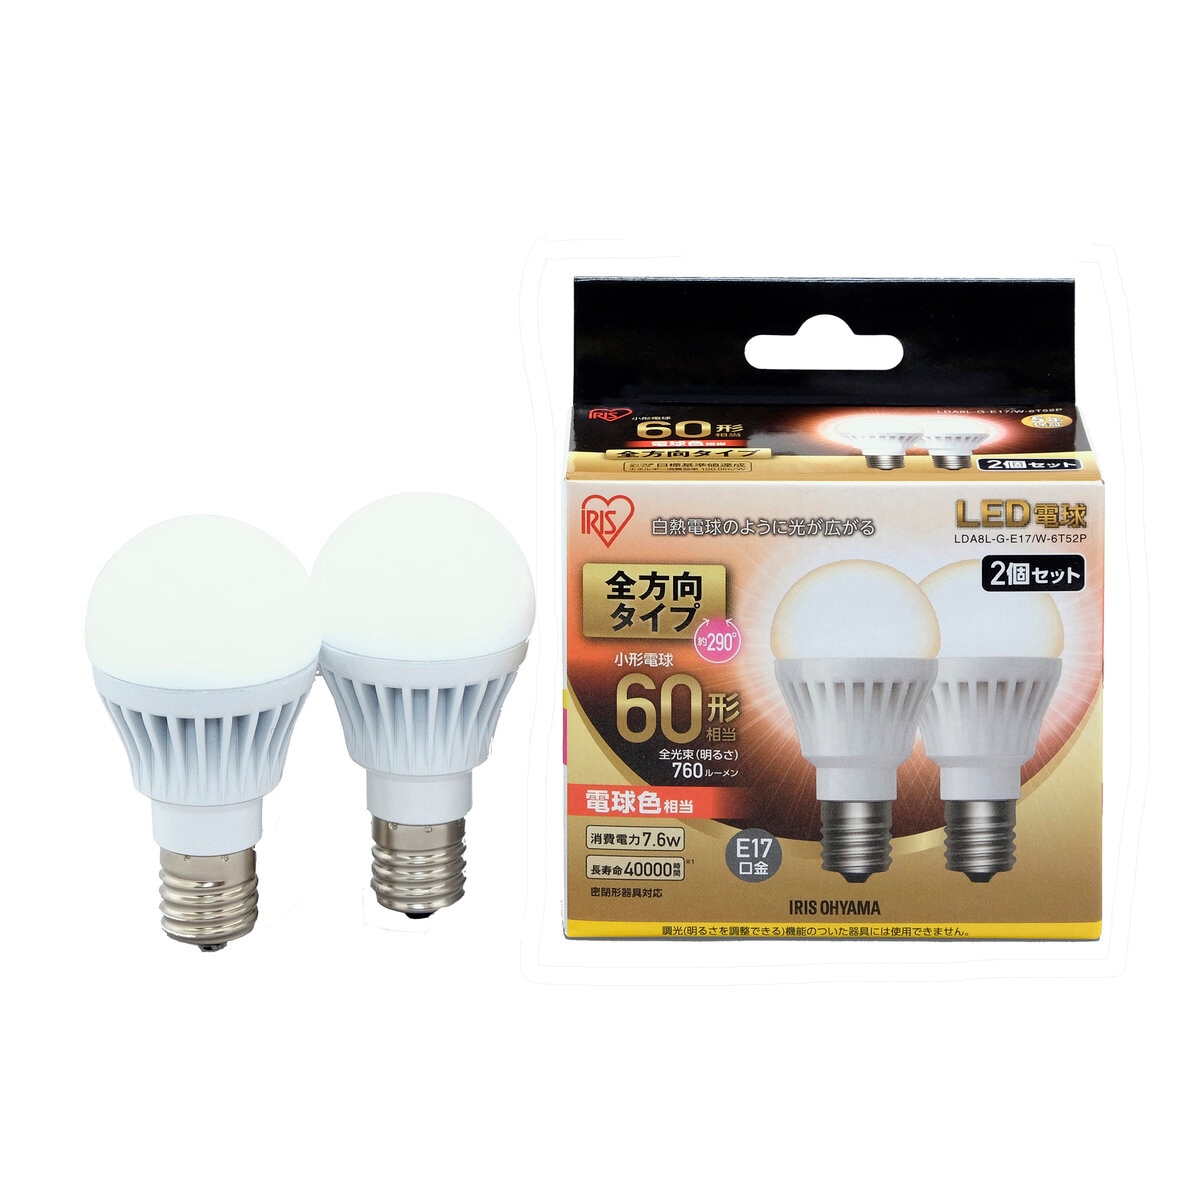 アイリスオーヤマ LED電球 全方向 E17 60型相当 2個セット 電球色 LDA8L-G-E17/W-6T52P